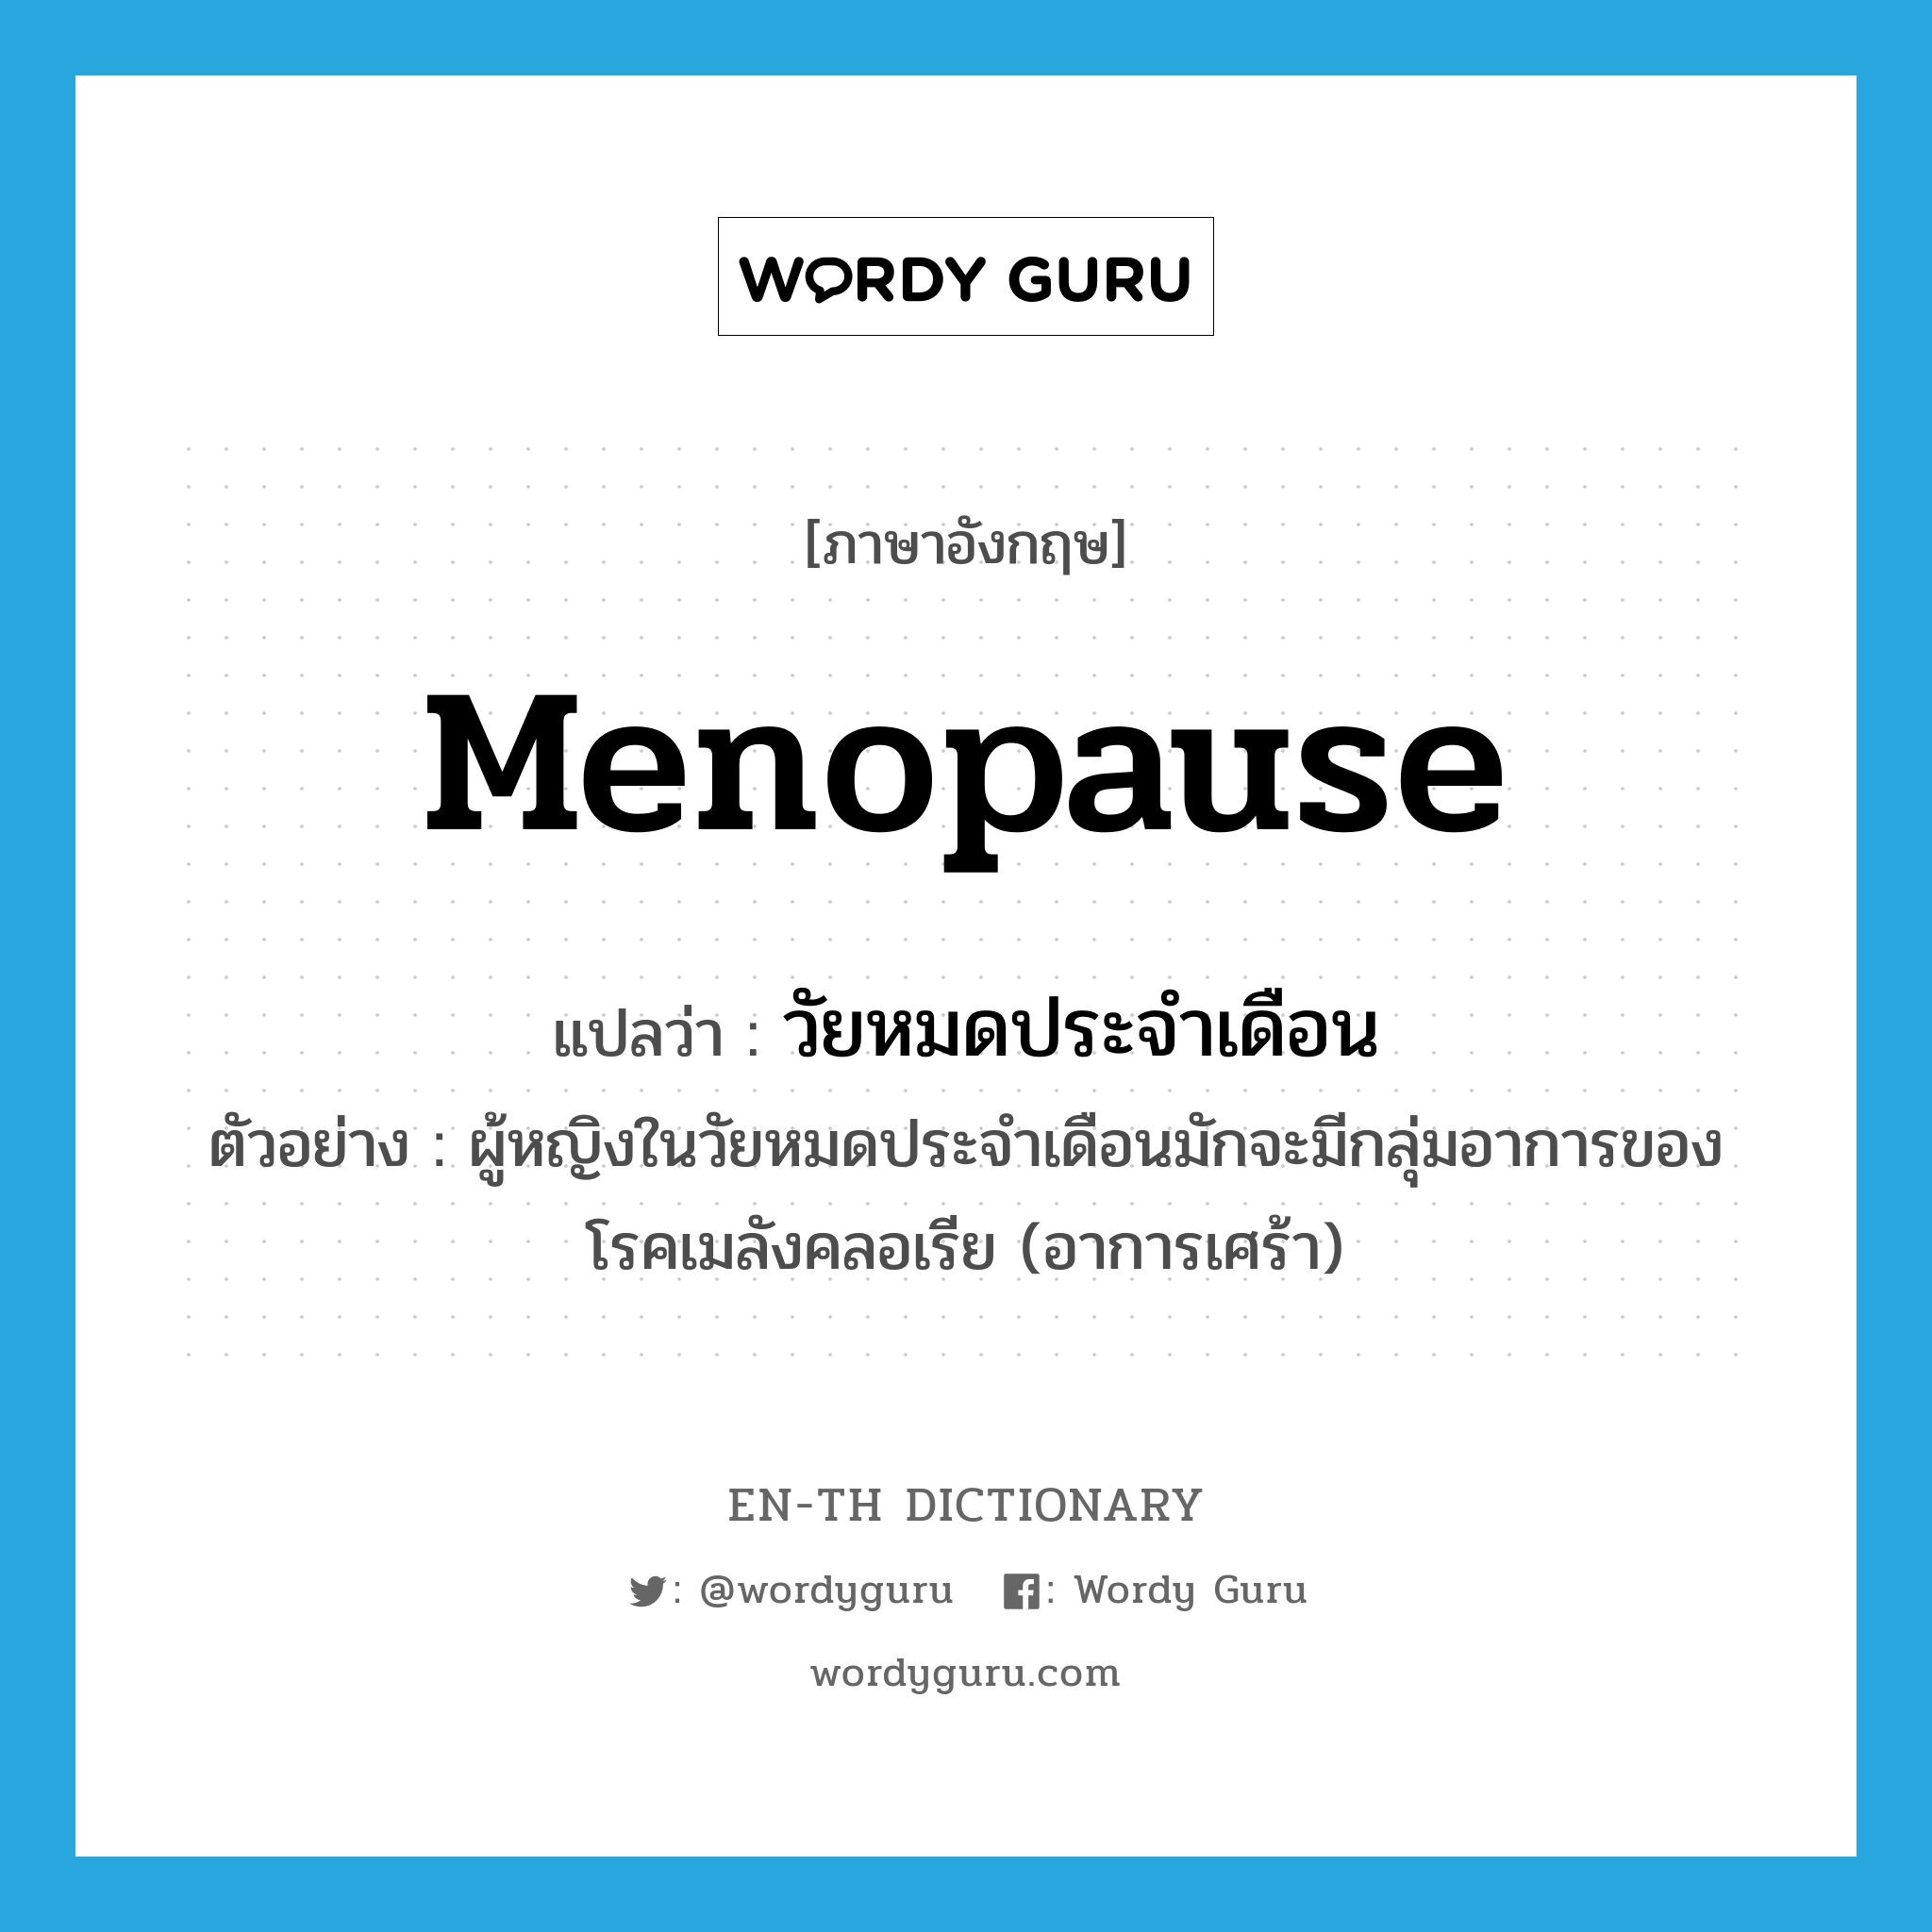 วัยหมดประจำเดือน ภาษาอังกฤษ?, คำศัพท์ภาษาอังกฤษ วัยหมดประจำเดือน แปลว่า menopause ประเภท N ตัวอย่าง ผู้หญิงในวัยหมดประจำเดือนมักจะมีกลุ่มอาการของโรคเมลังคลอเรีย (อาการเศร้า) หมวด N